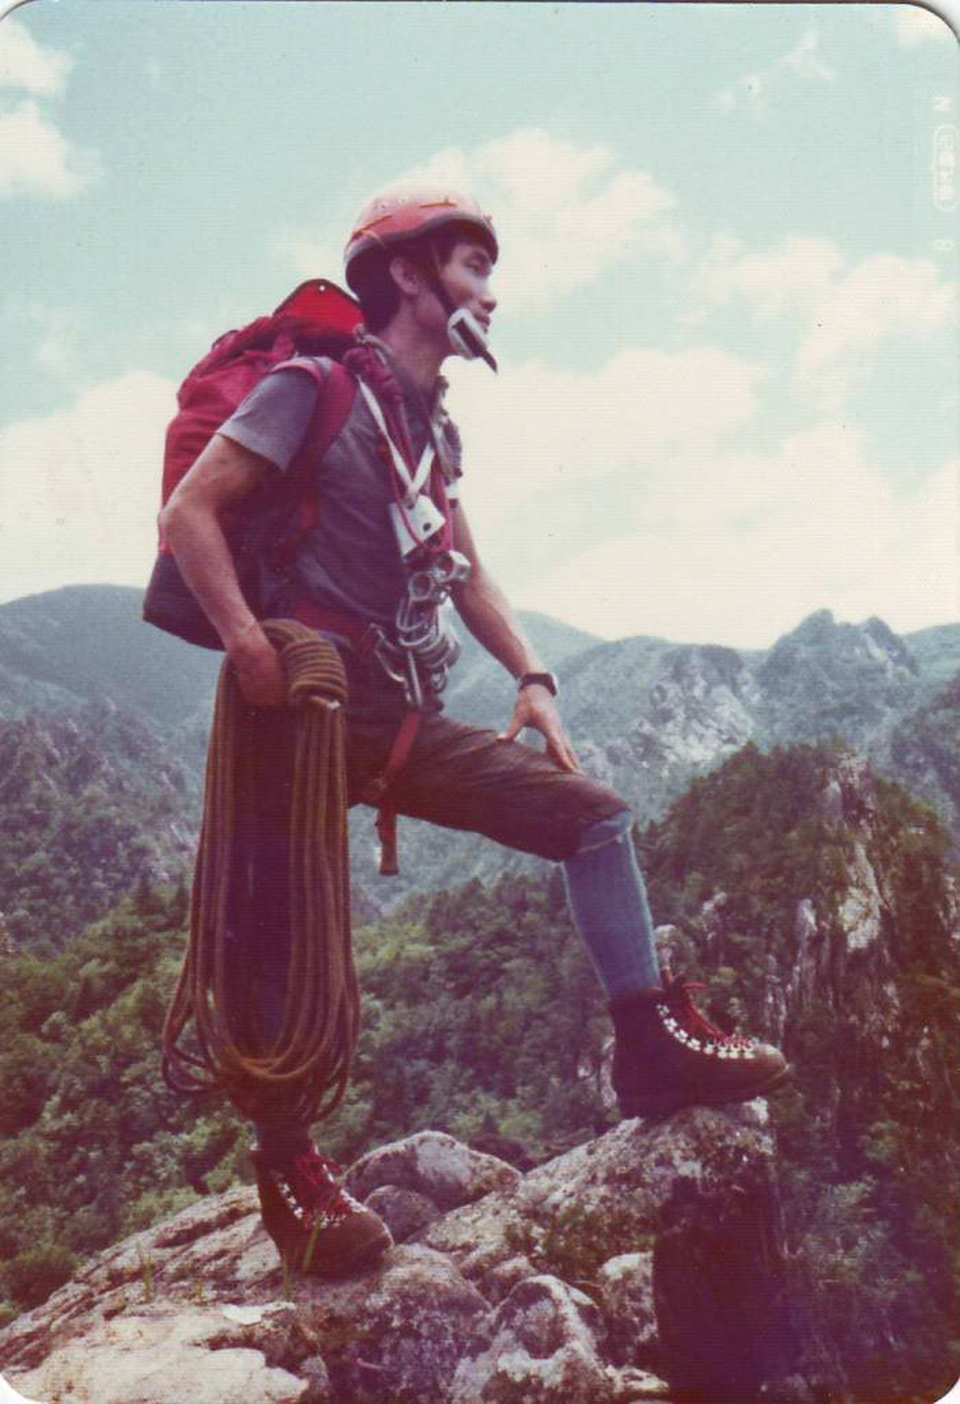 조수경씨가 간직하고 있던 설악산에서 등반 중이던 아버지 조광열씨 사진.